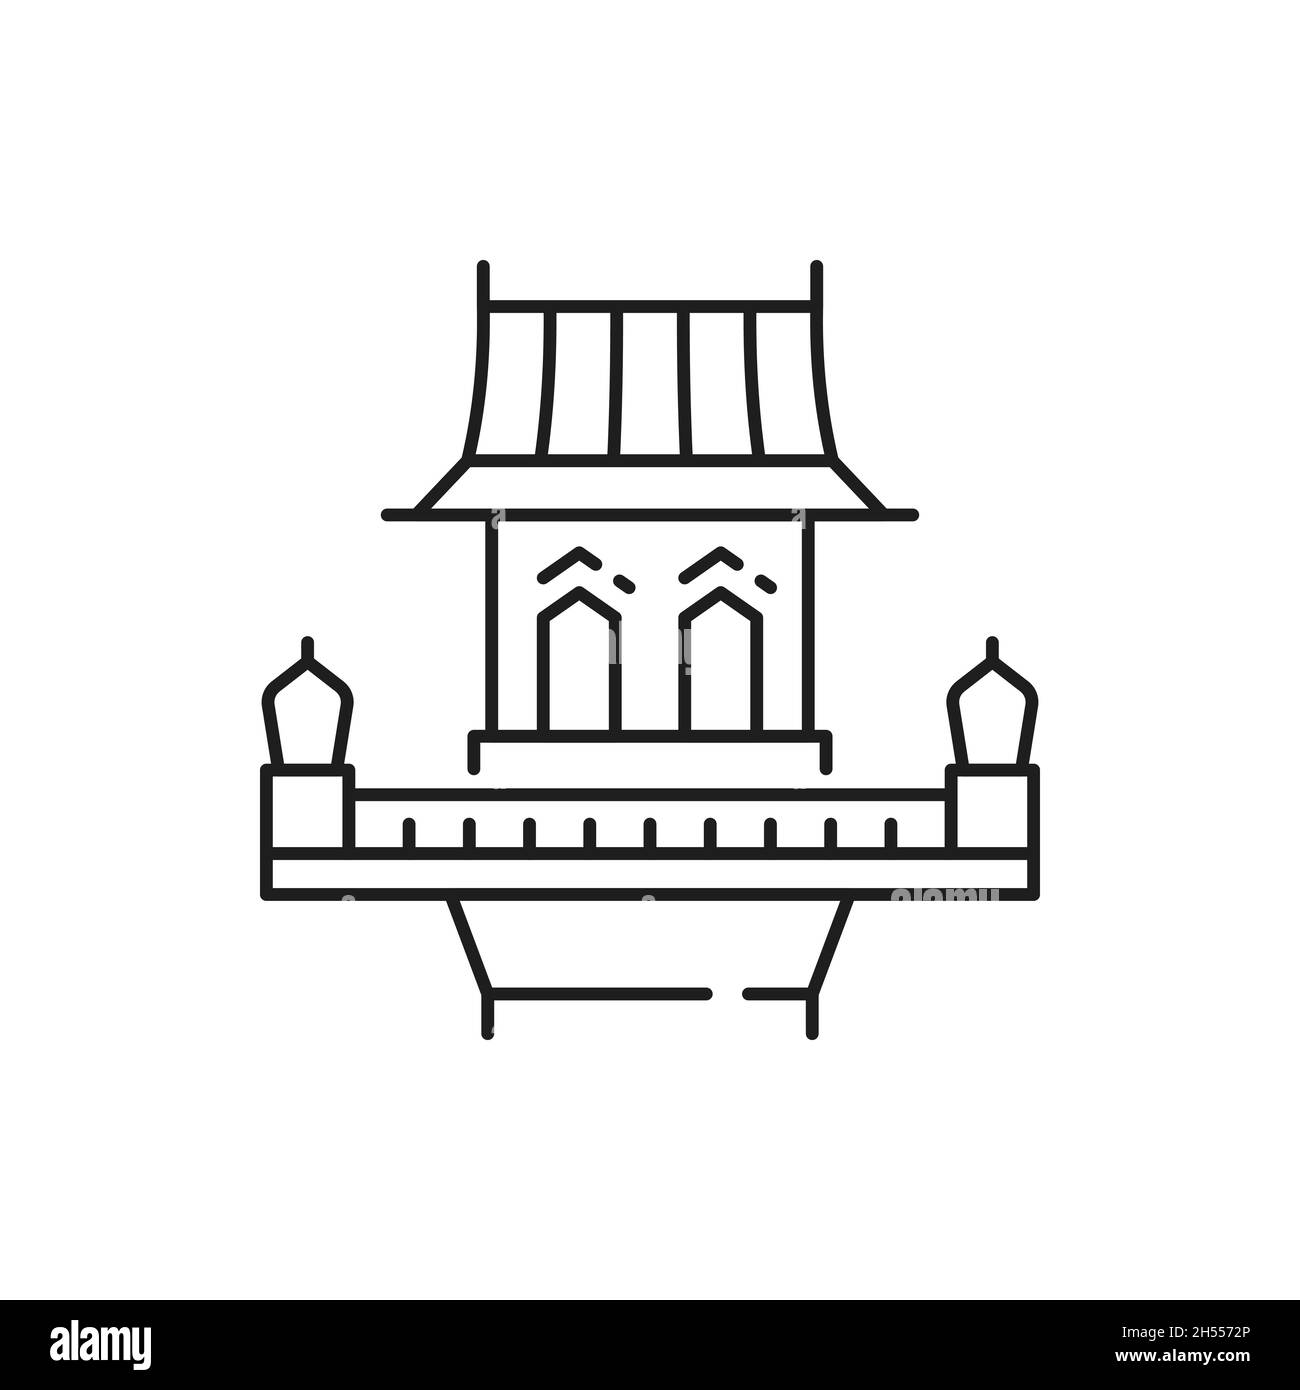 Altmodisches thailändisches Gebäude, isoliertes altes Straßenhaus mit Balkon, dünne Linien-Ikone. Vektor orientalisches Wahrzeichen, asiatische Struktur, Thai, Vietnam oder China Bogen Stock Vektor